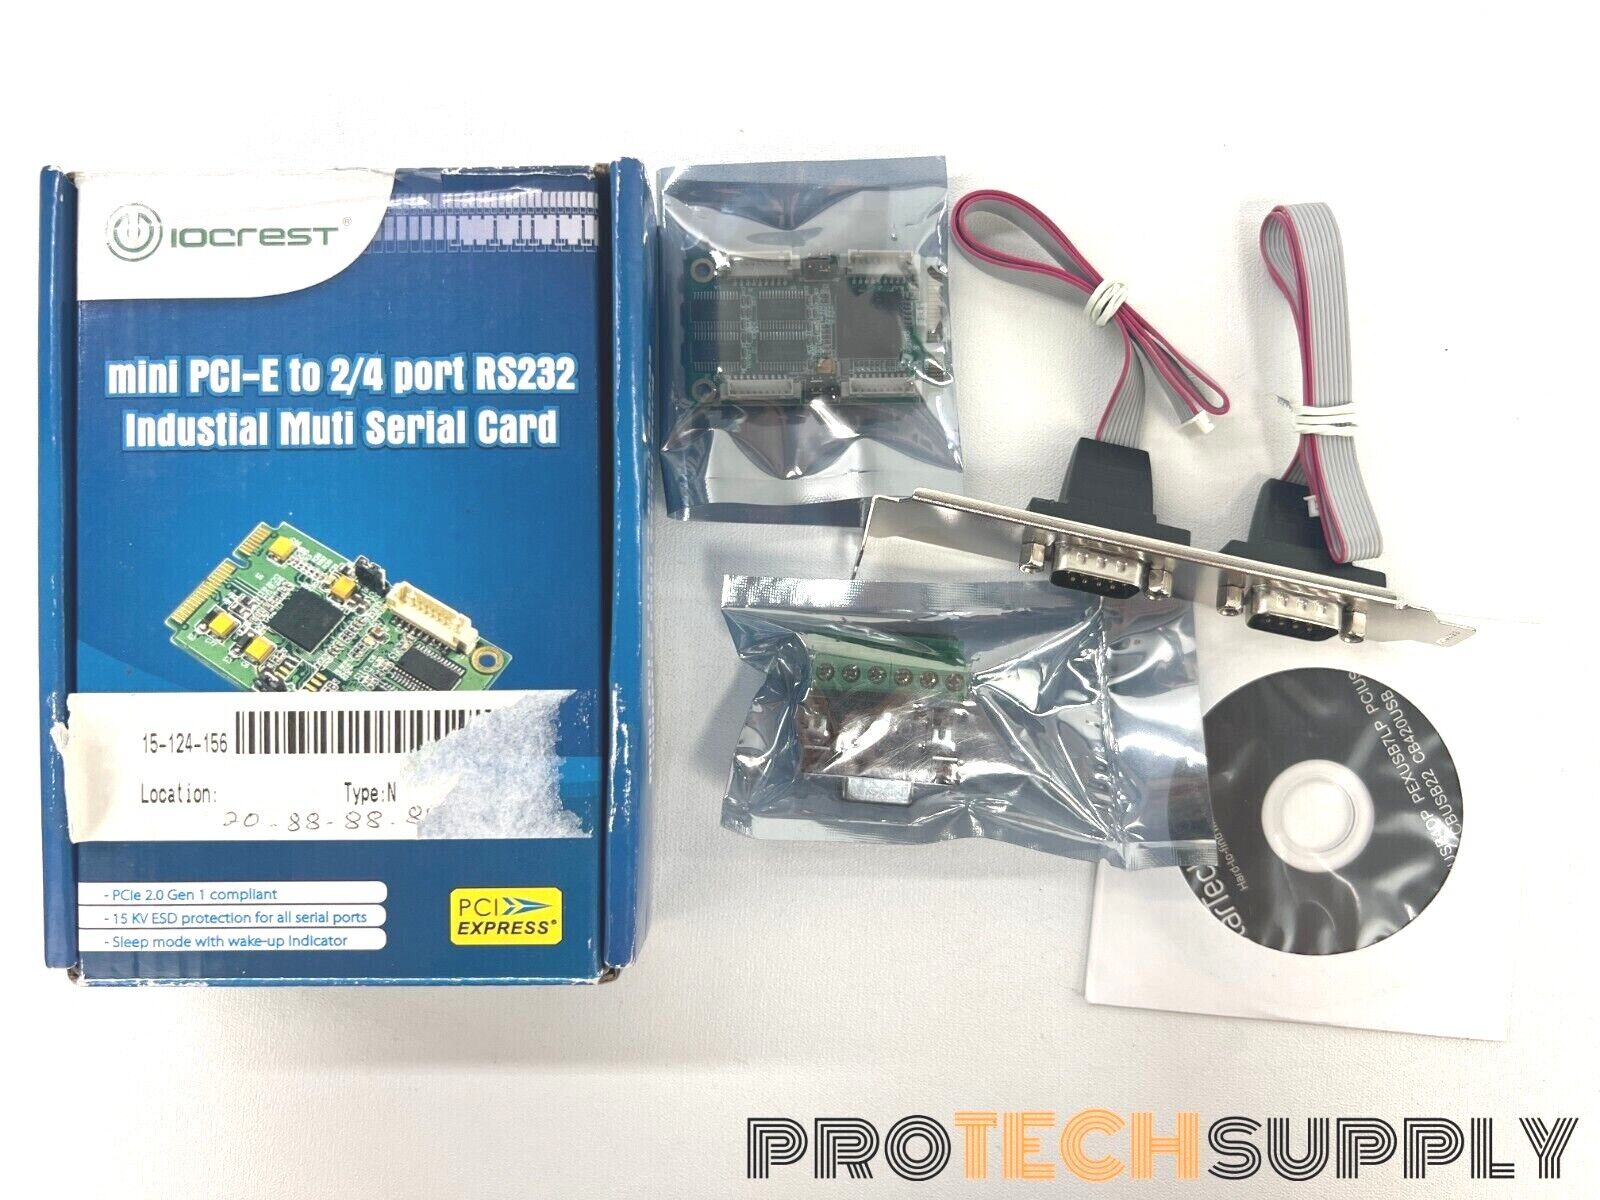 NEW IOCrest SI-MPE15047 4-Port Mini Pci-E Controller Card with WARRNTY